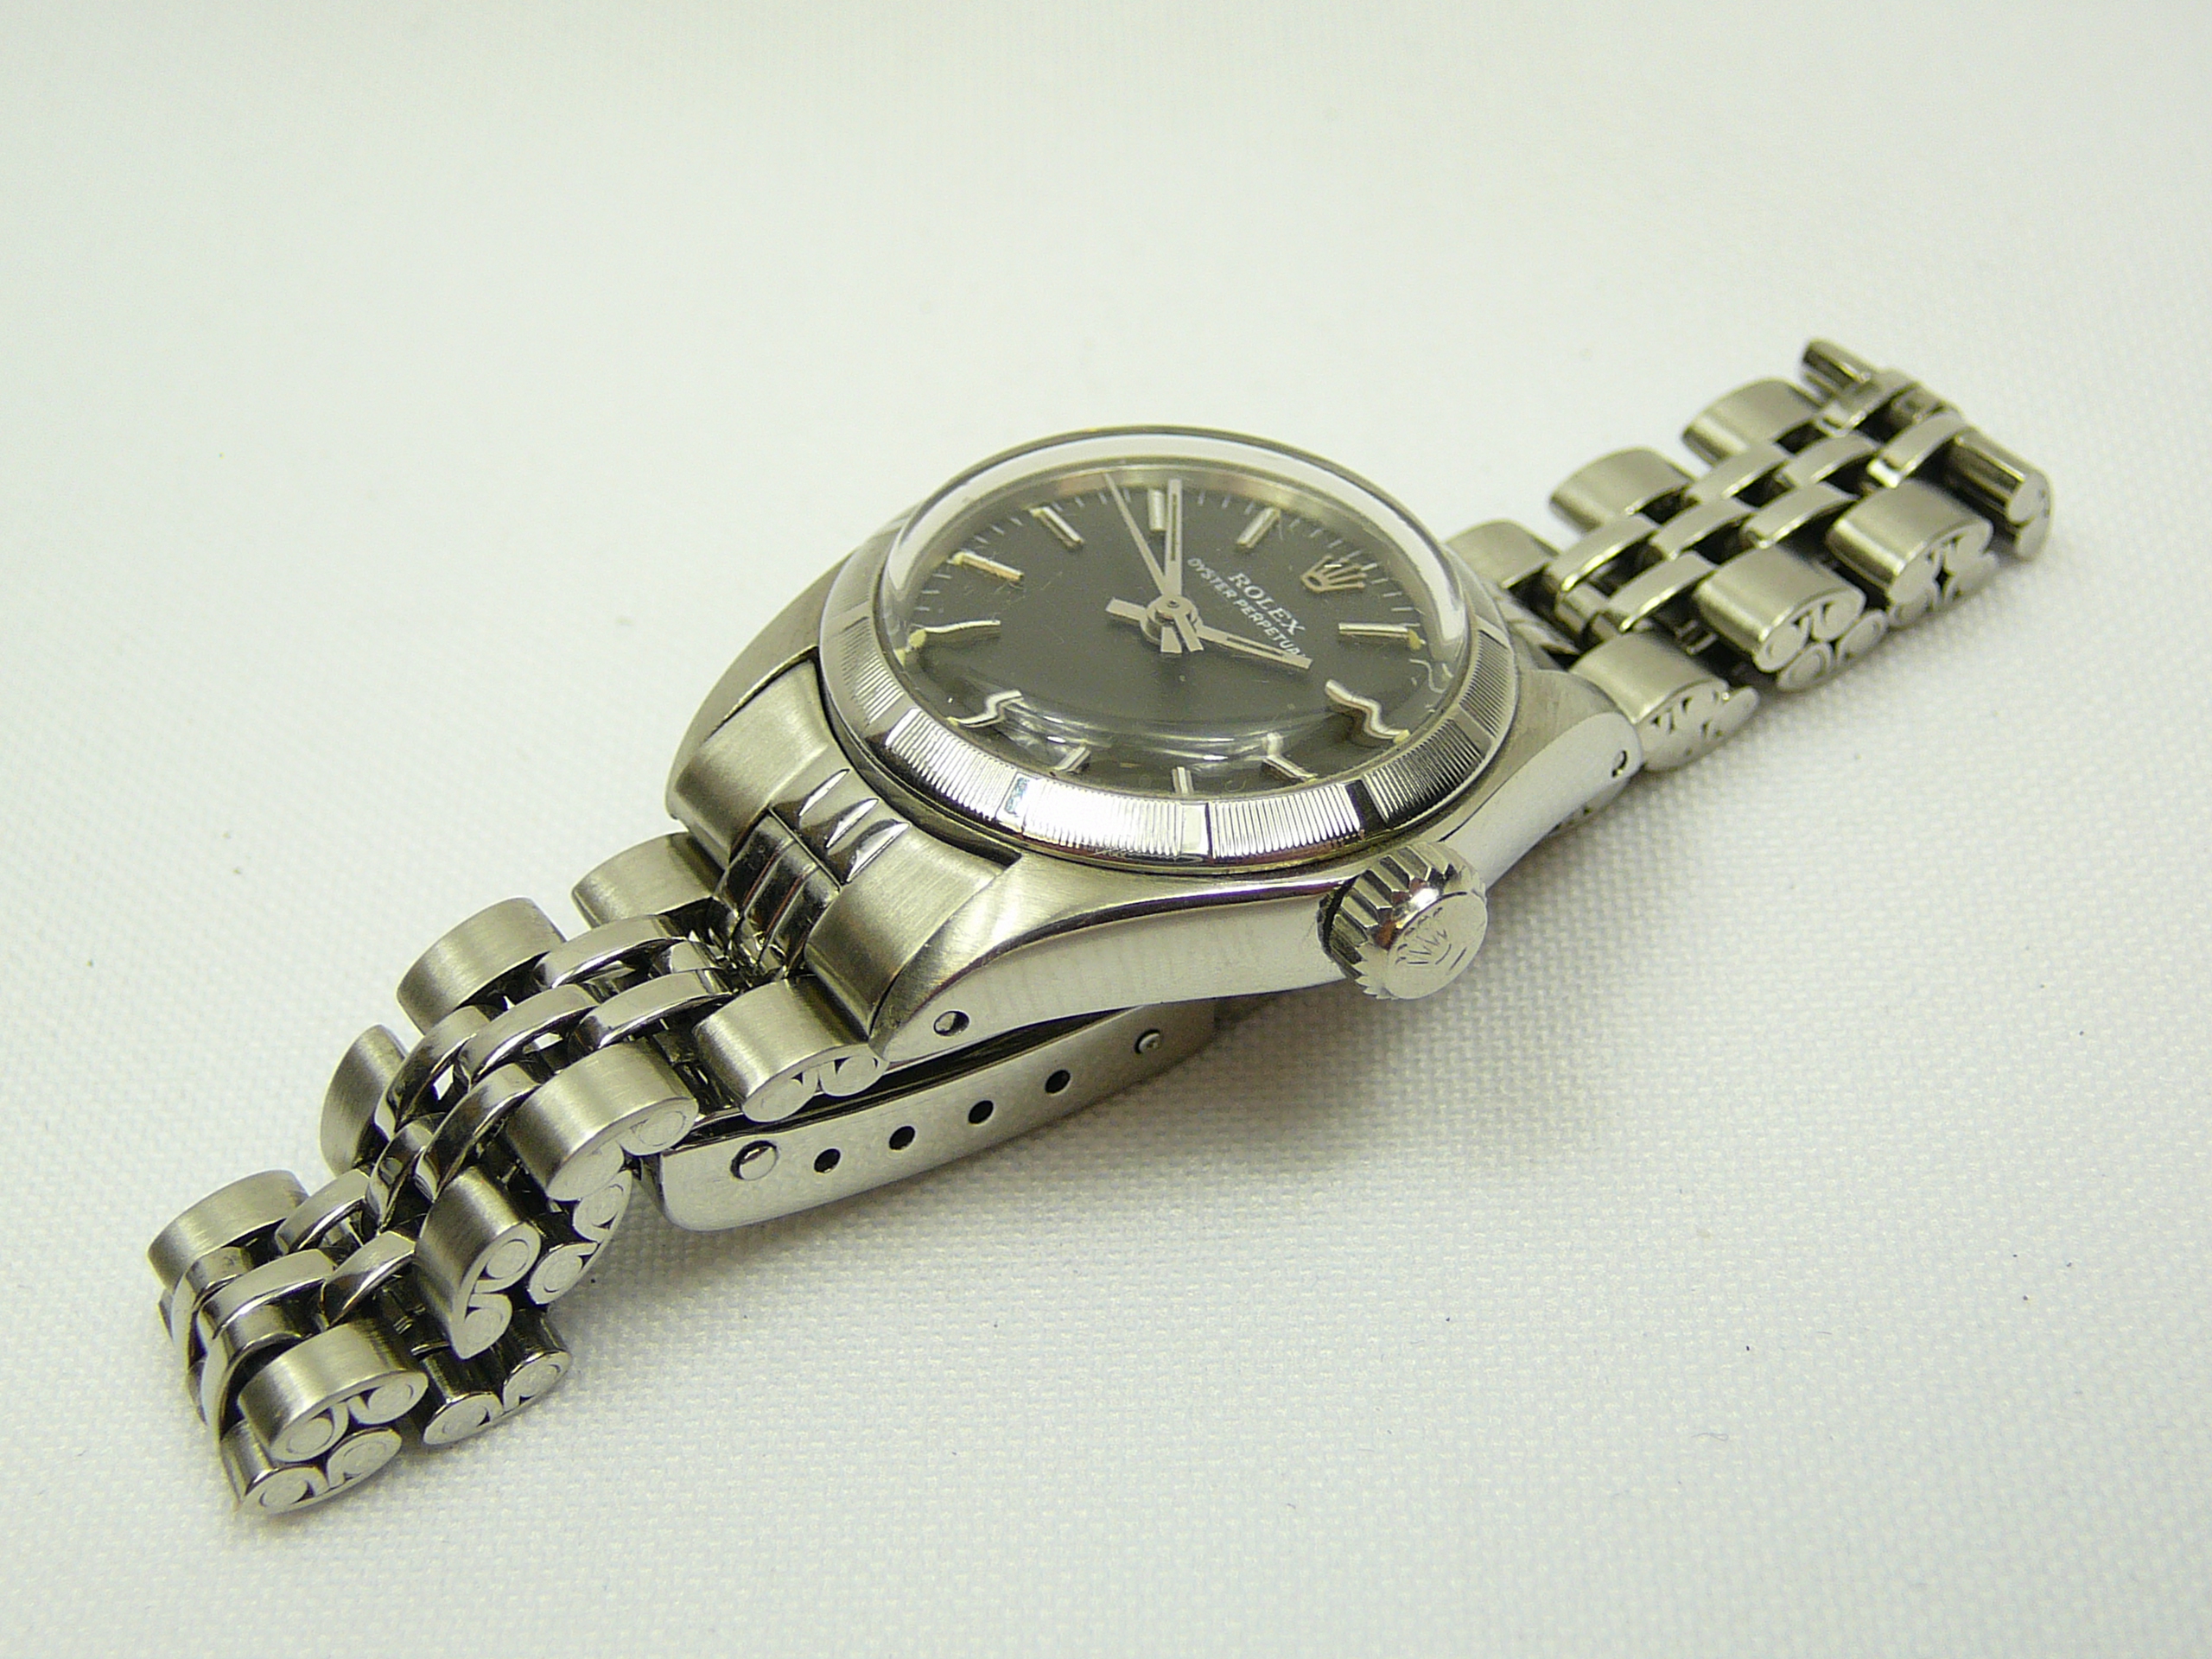 Ladies Rolex Wrist Watch - Image 3 of 4